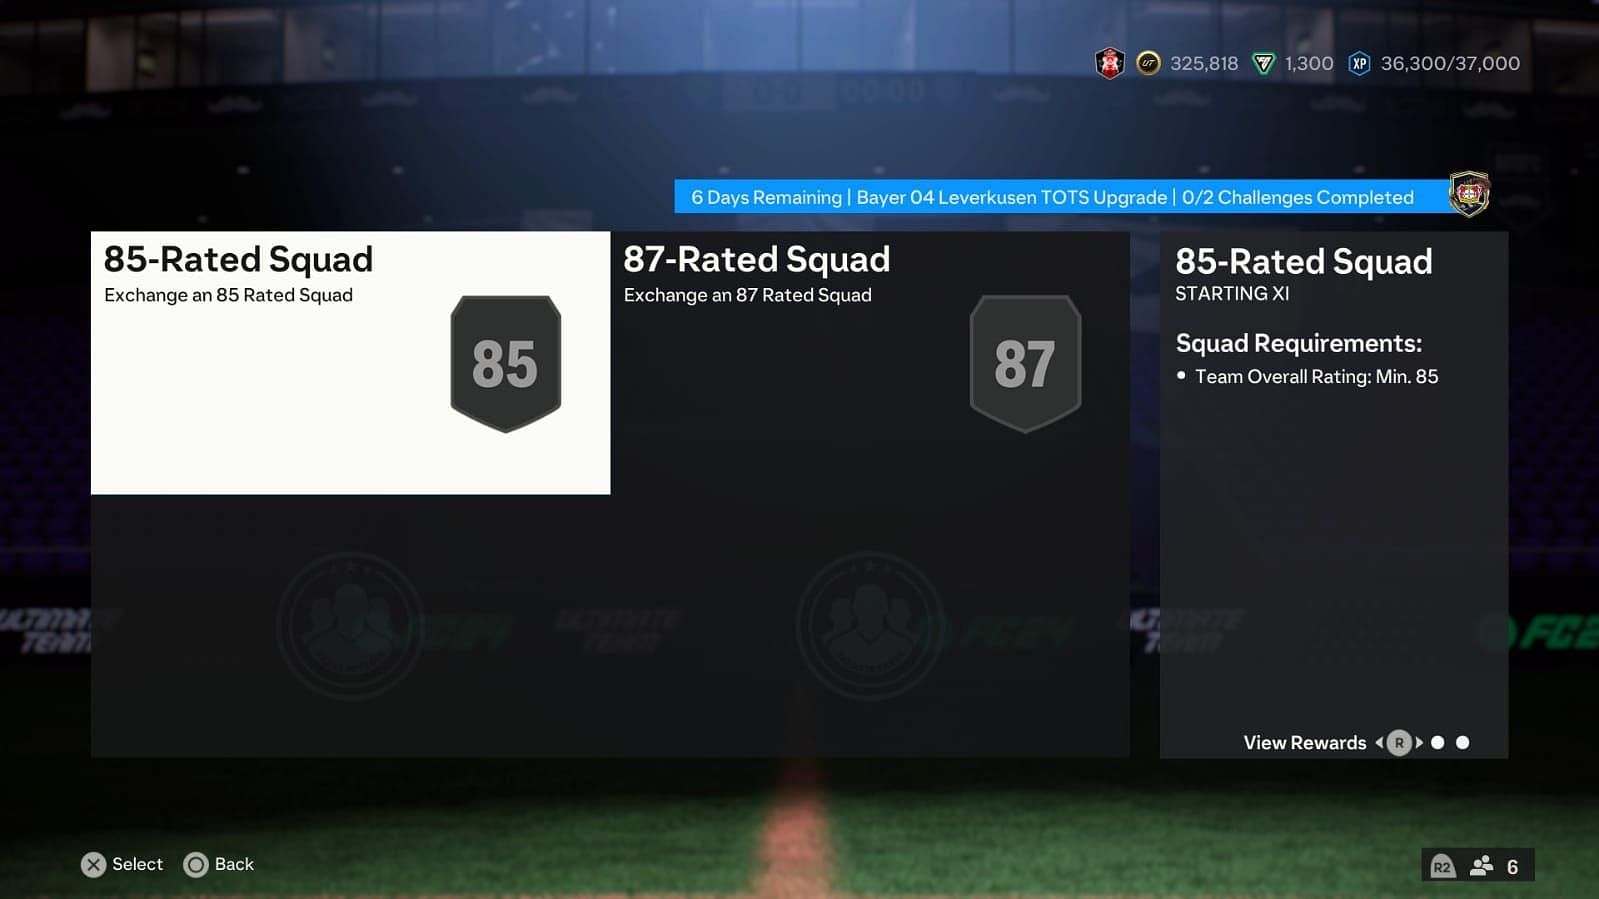 The SBC has two segments (Image via EA Sports)